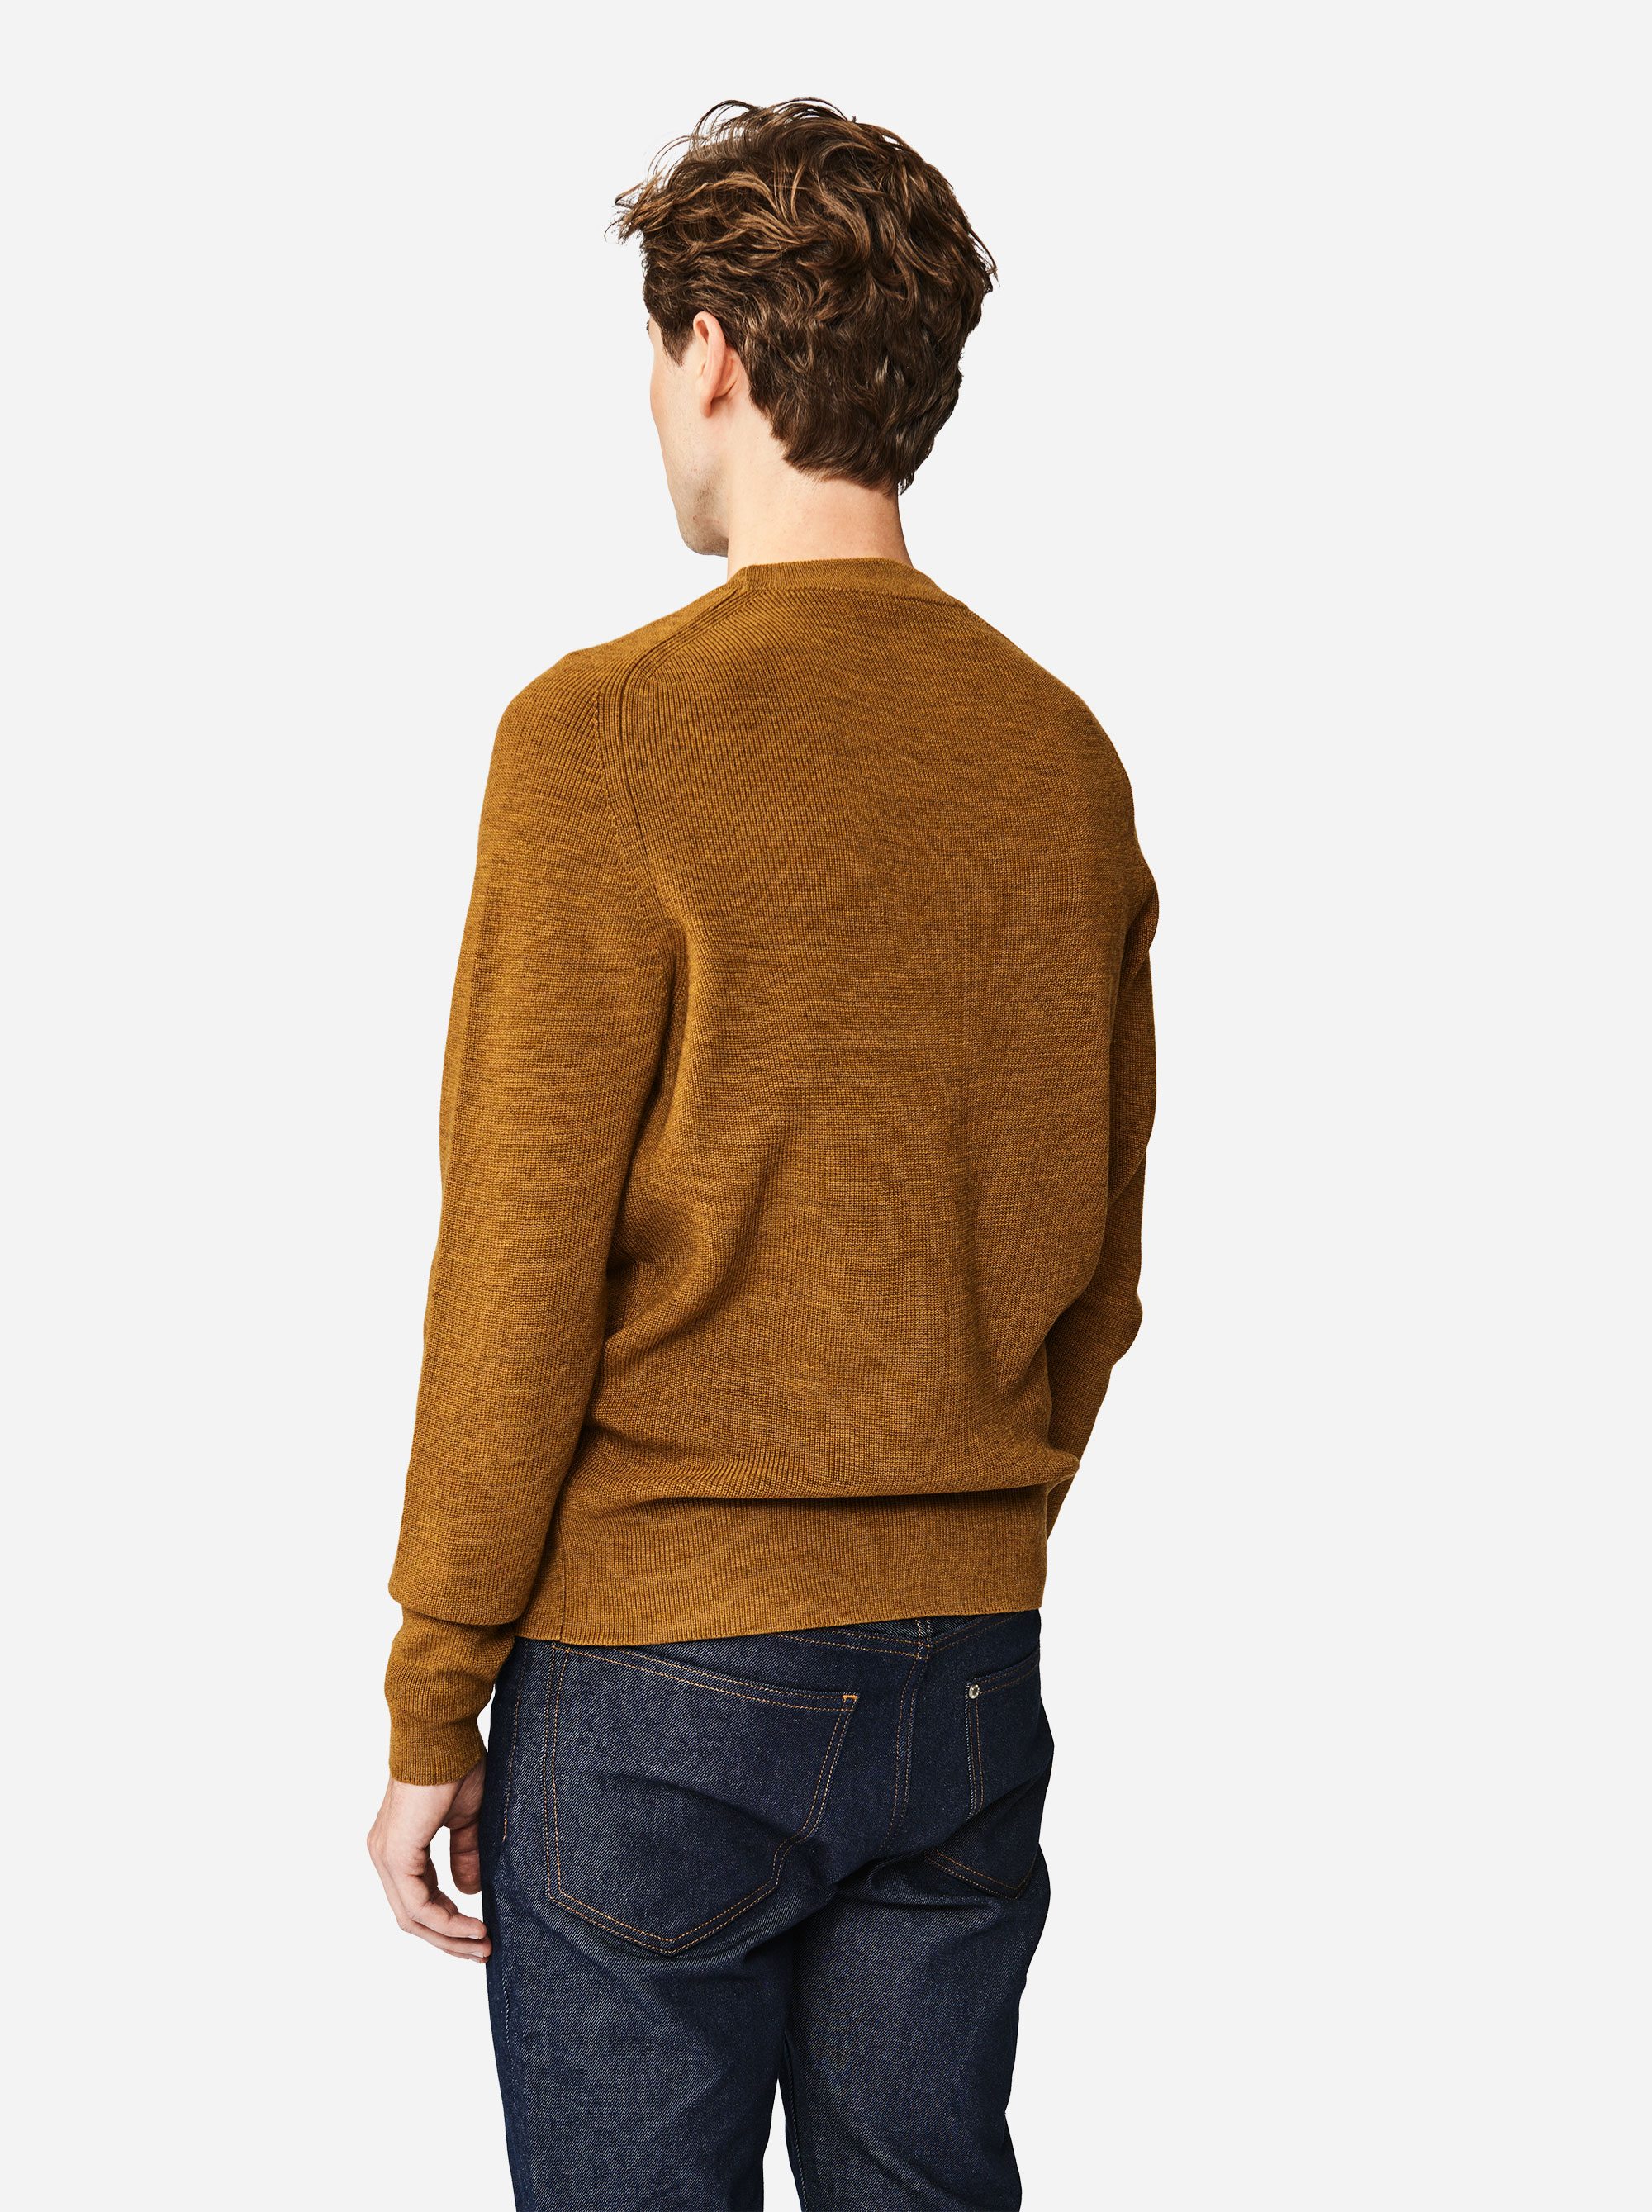 Teym - The Merino Sweater - Men - Mustard - 1